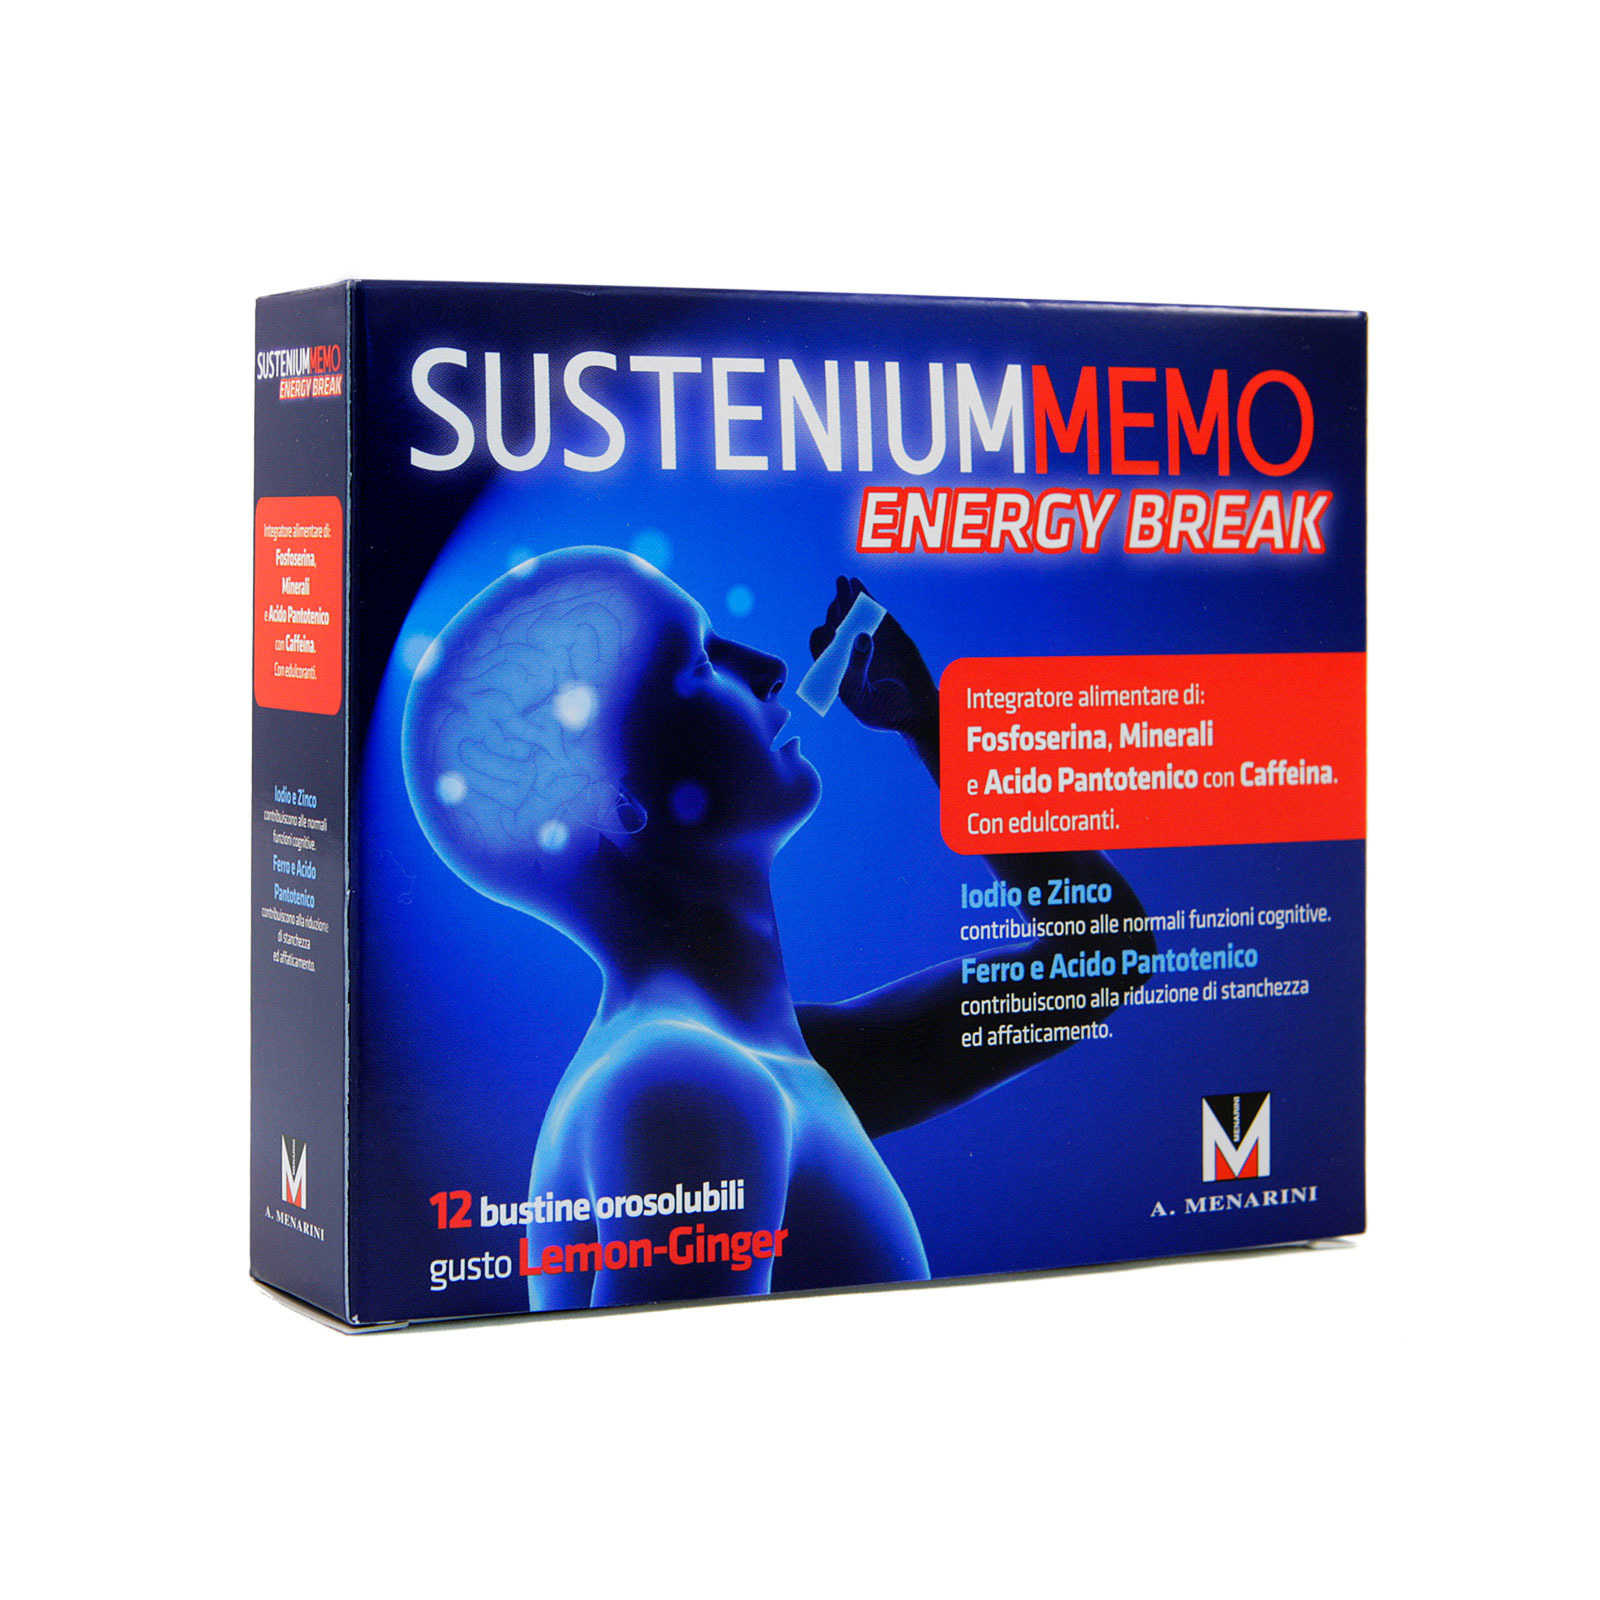 Sustenium - Sustenium Memo - Energy Break